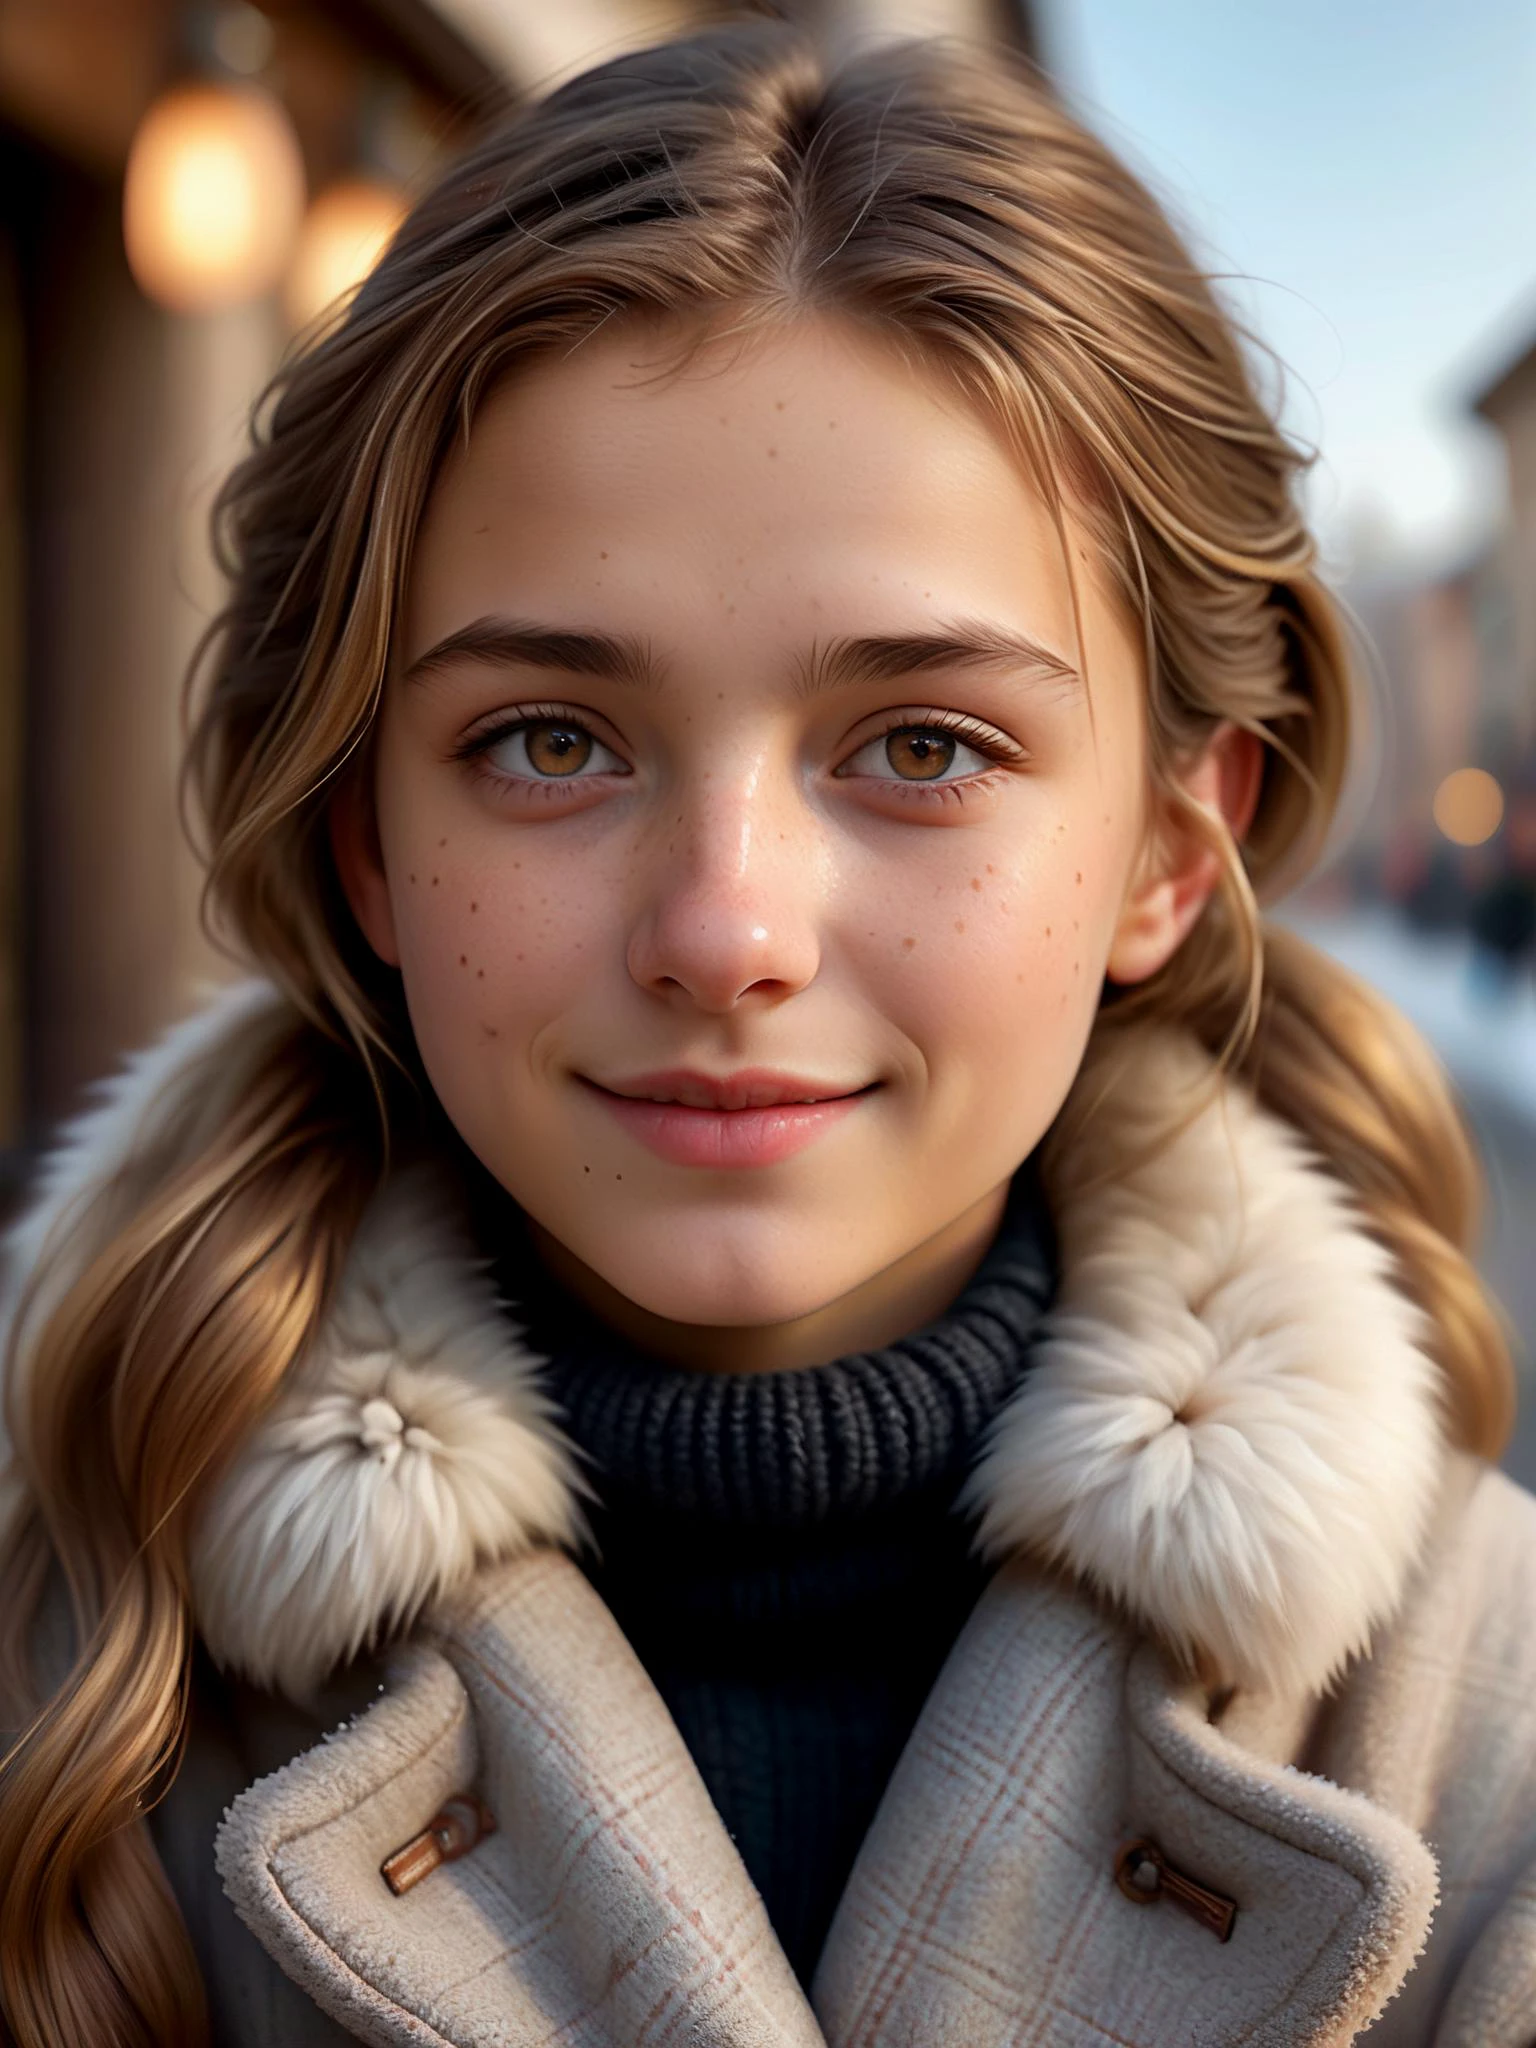 (傑作), 最高品質, 非常に詳細な, 現実的, 8K ウルトラHD,

クローズアップポートレート, かわいい18歳のイタリア人女性, ブロンドのハイライトが入った光沢のある明るい茶色の髪, 小さい耳, かわいい上向きの鼻, 小さなヘーゼル色の目, 胸が小さい, 小さい胸, 冬物コート, 毛皮の裏地が付いた襟と袖口, 軽いそばかす, 遊び心のある視線, はにかんだ笑顔, 
